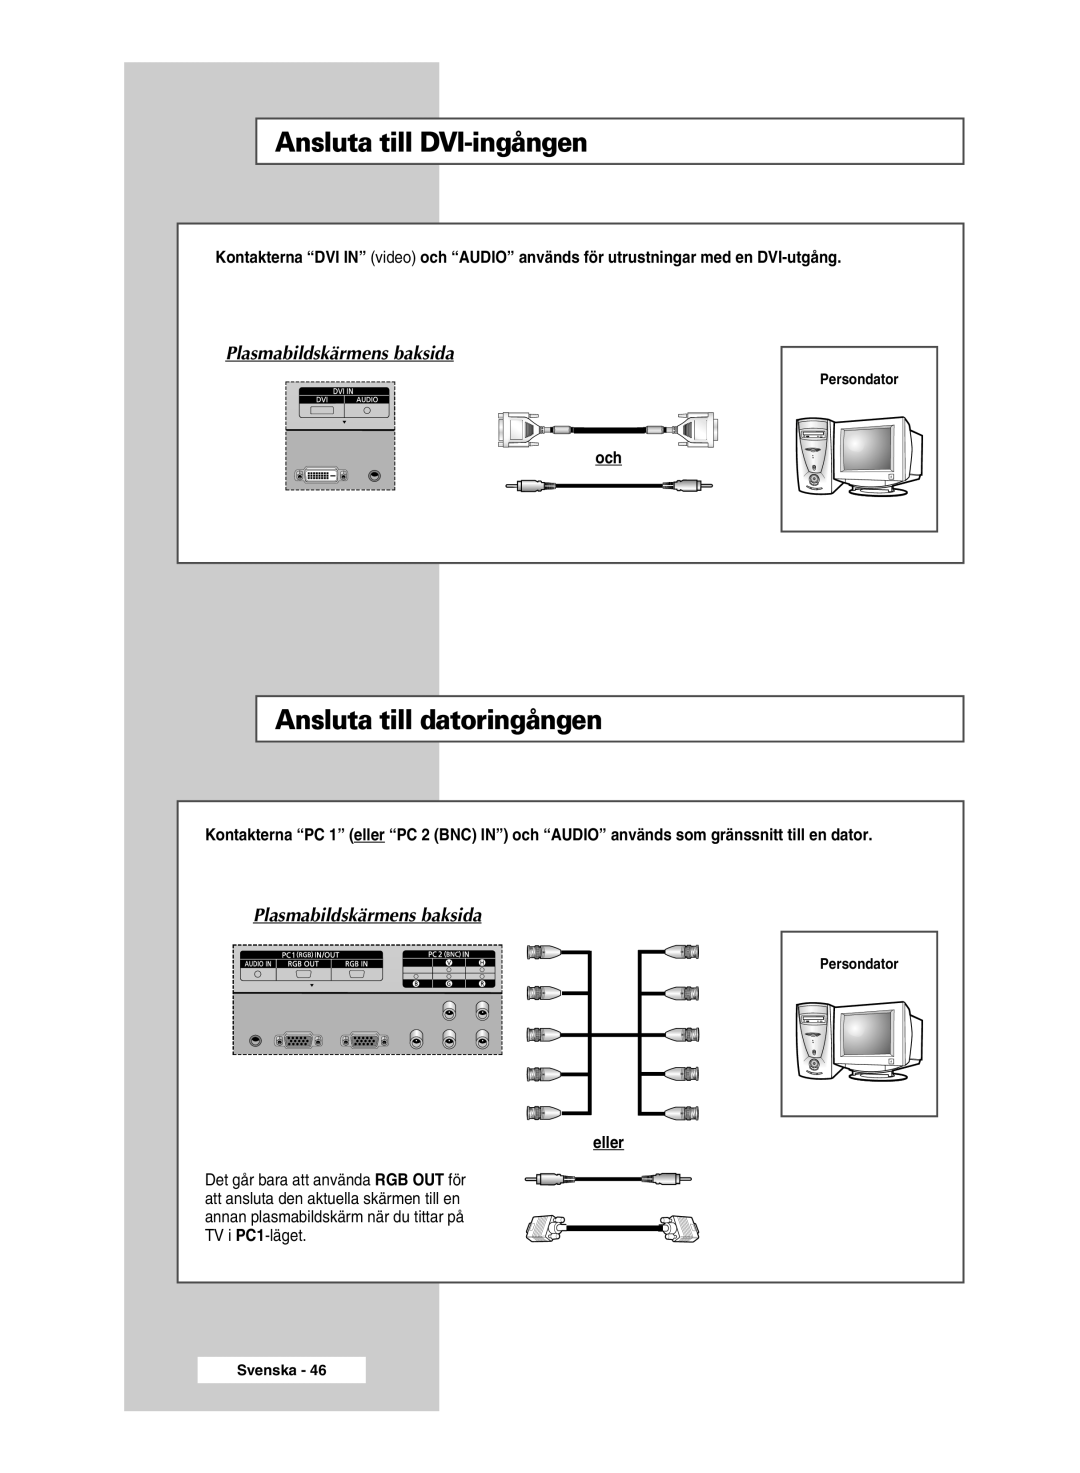 Samsung PPM50M5HSX/EDC manual Ansluta till DVI-ingången, Ansluta till datoringången, Plasmabildskärmens baksida, Svenska 